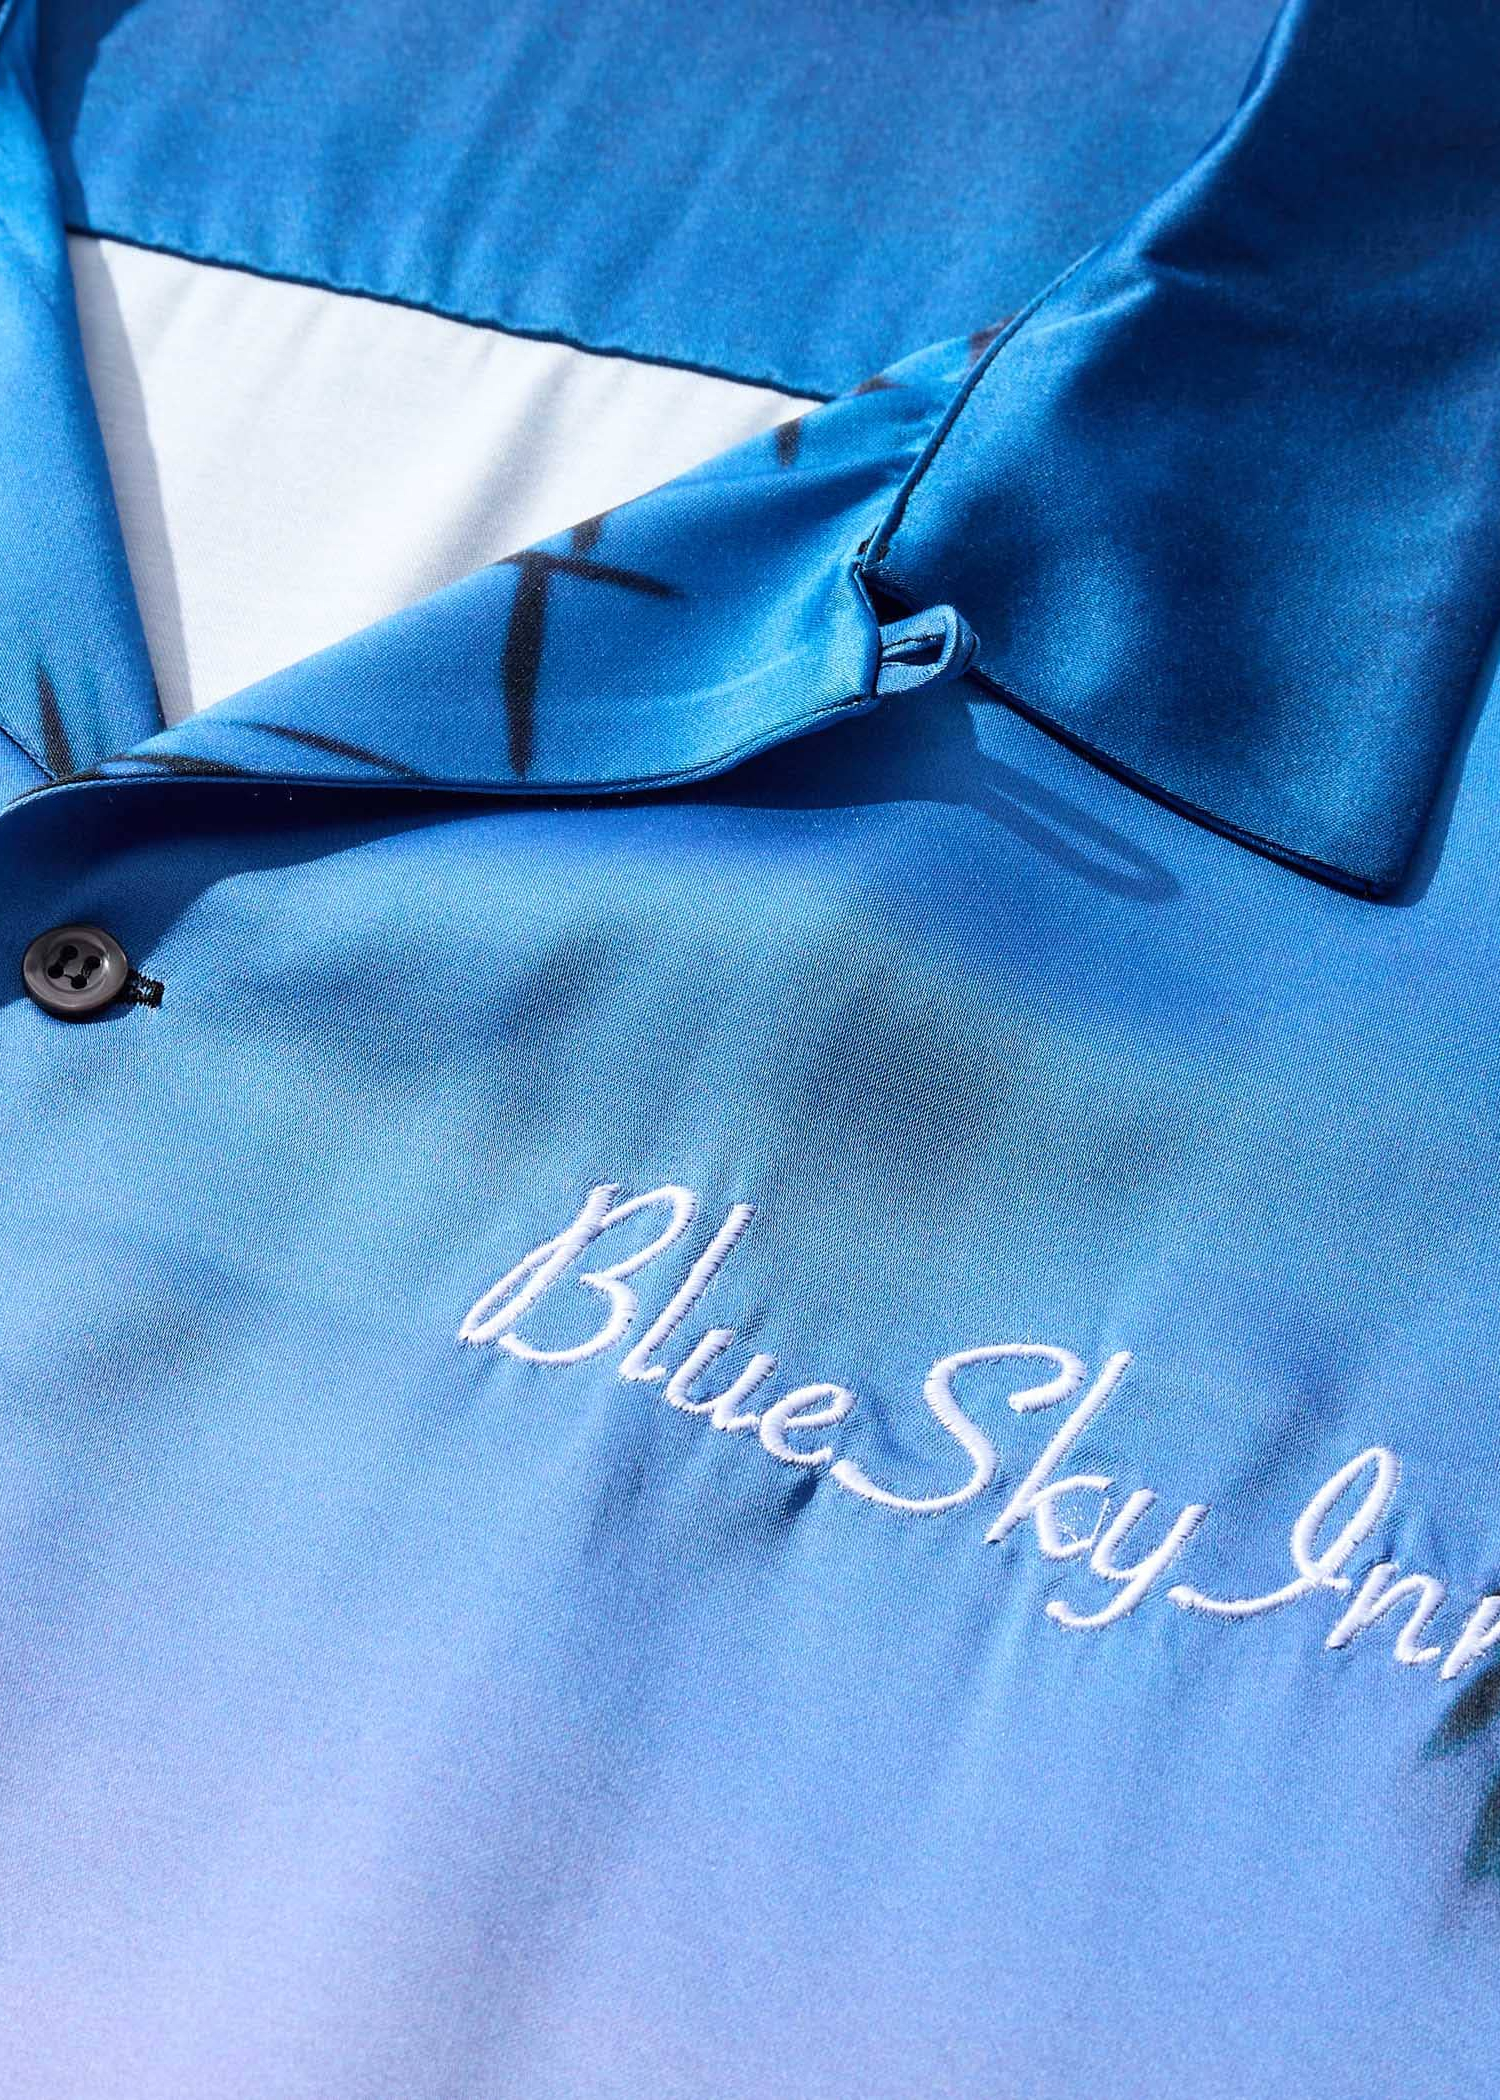 Blue Sky Inn Ipanema Sunrise Shirt